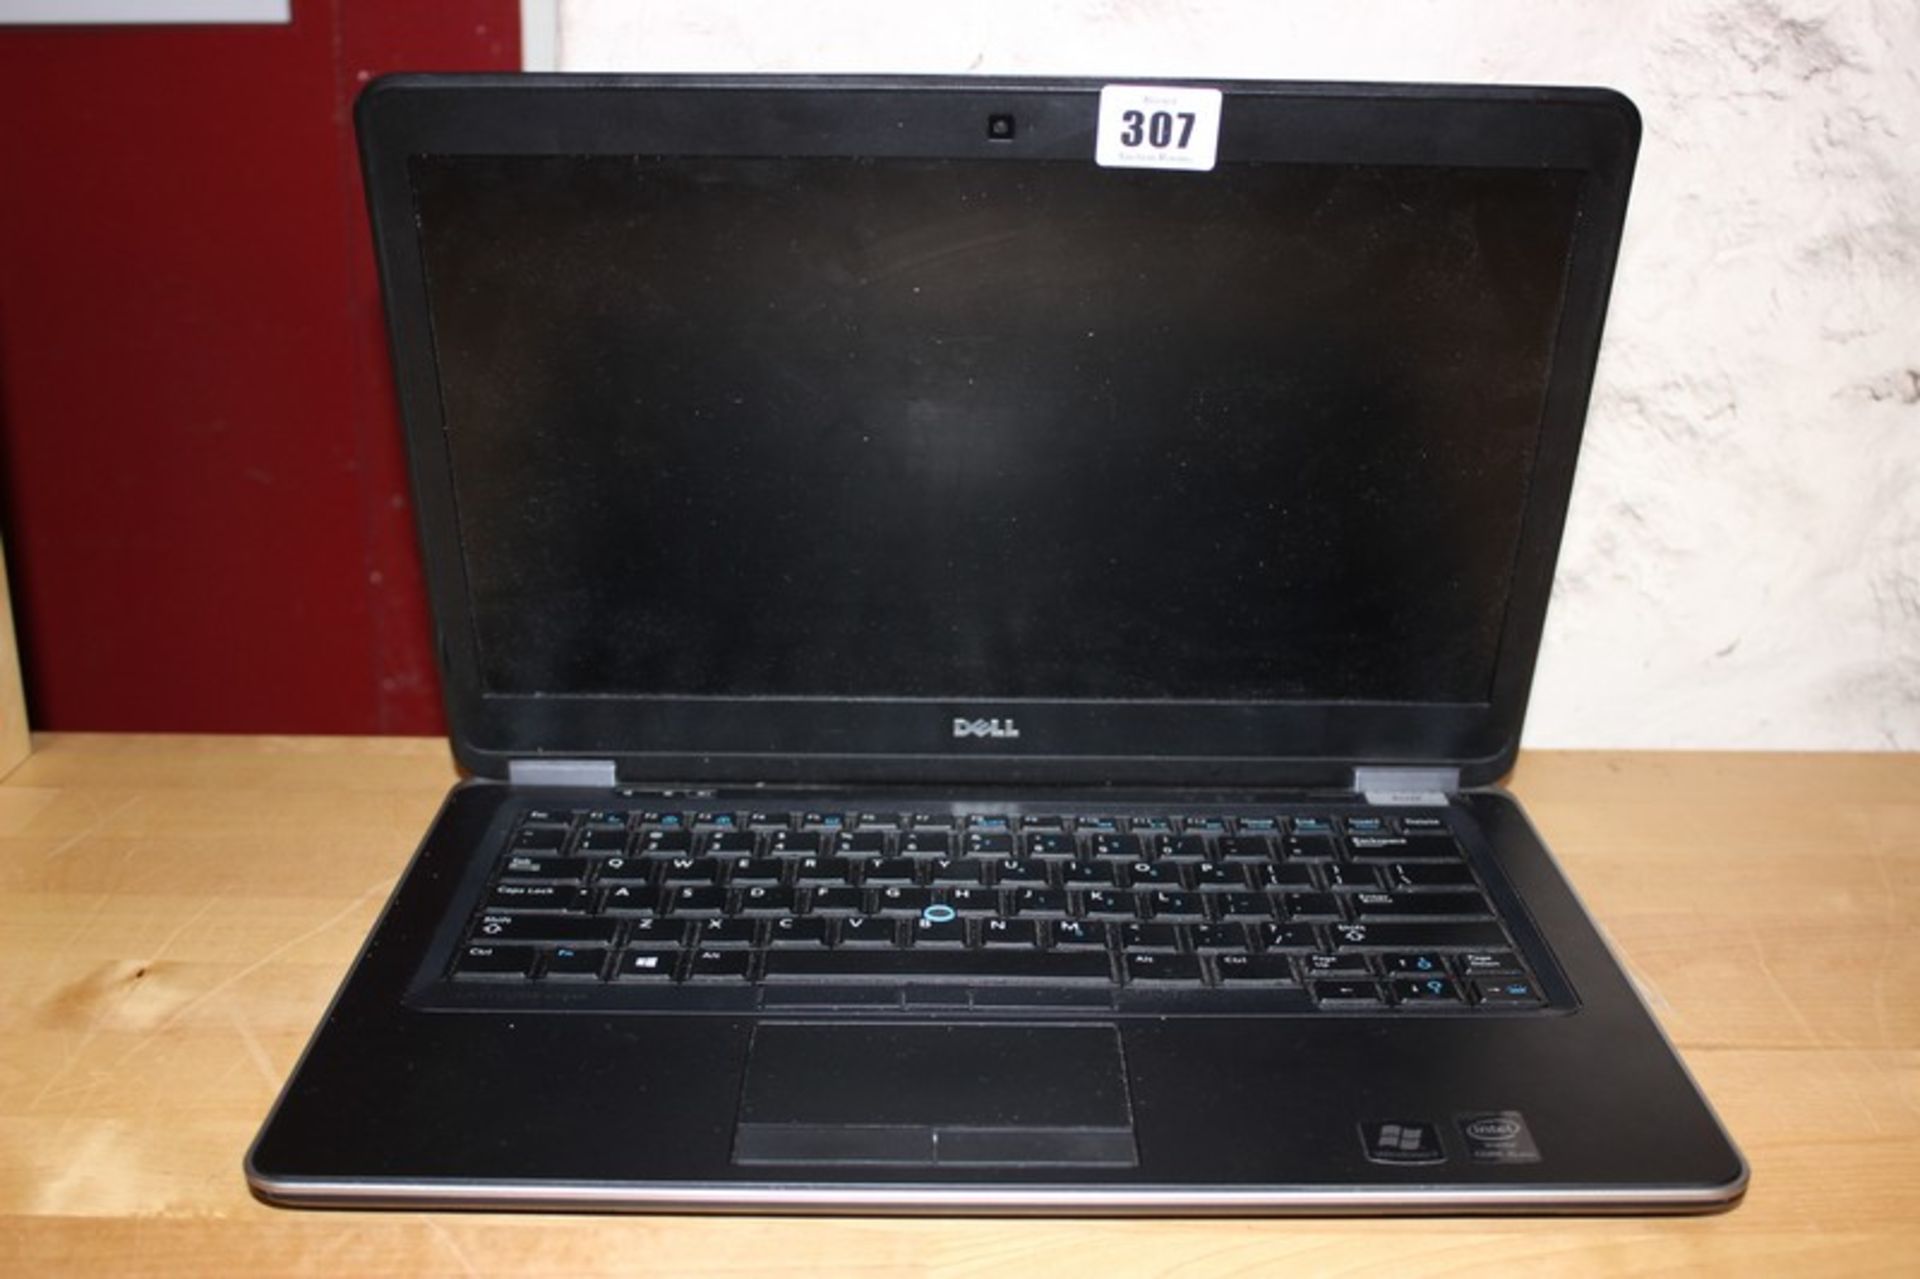 A Dell Latitude E7440 laptop (Hard drive removed).